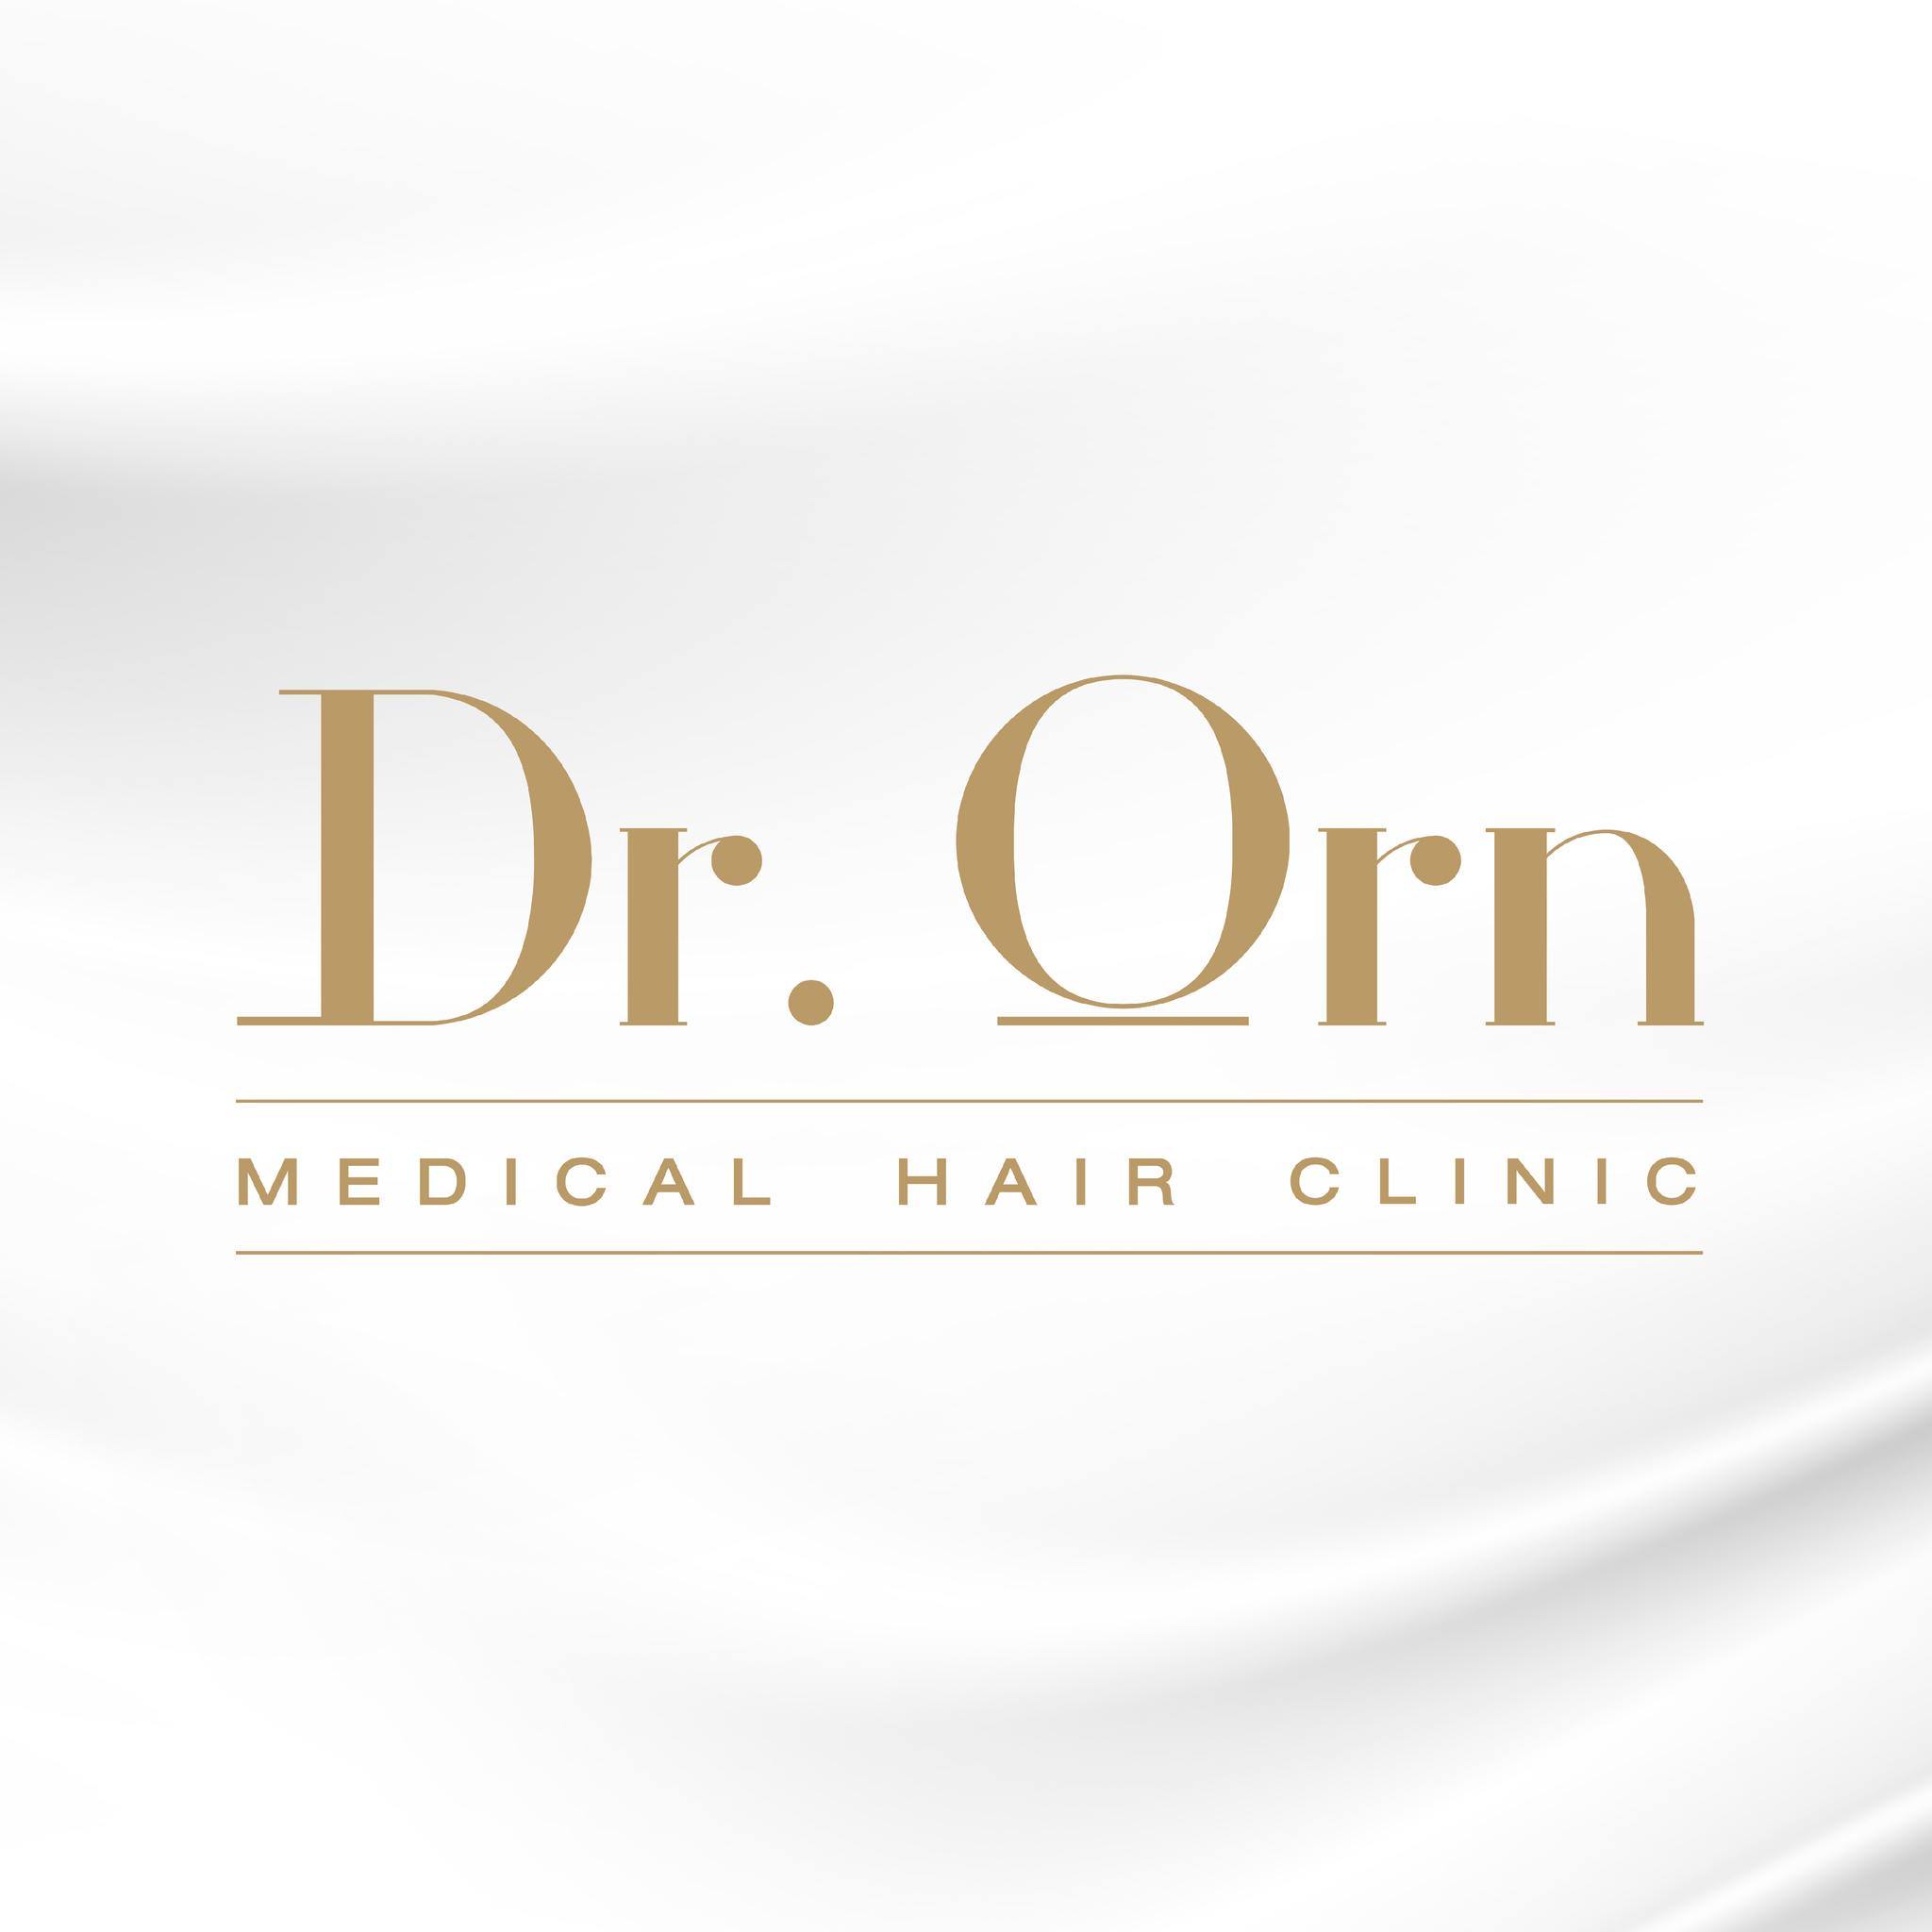 Dr.Orn Medical Hair Center